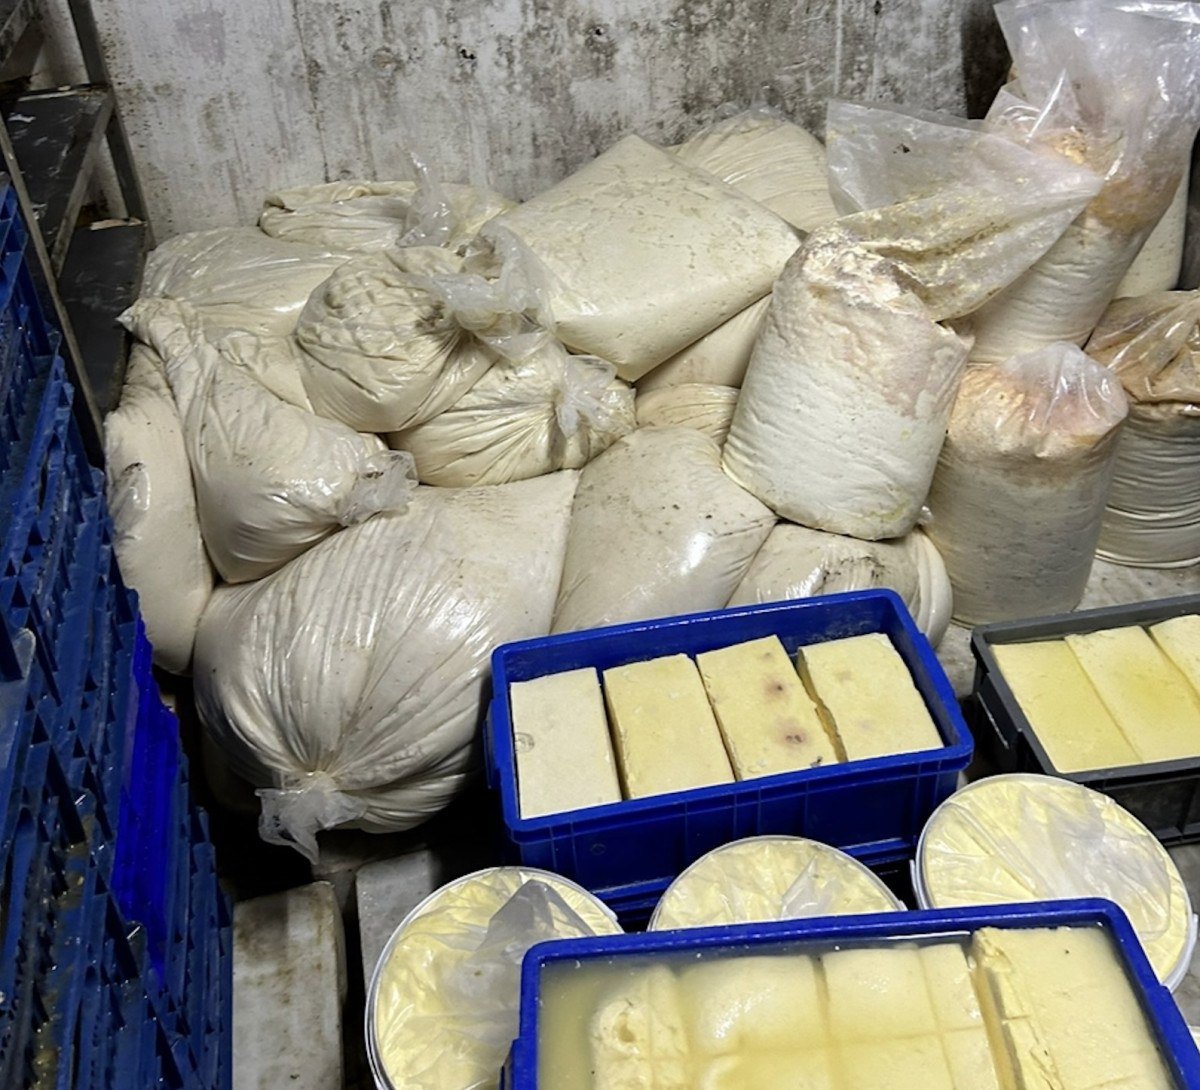 izmirde tuketim tarihi gecmis yaklasik 20 ton peynir ele gecirildi 0 pf9kG9L5